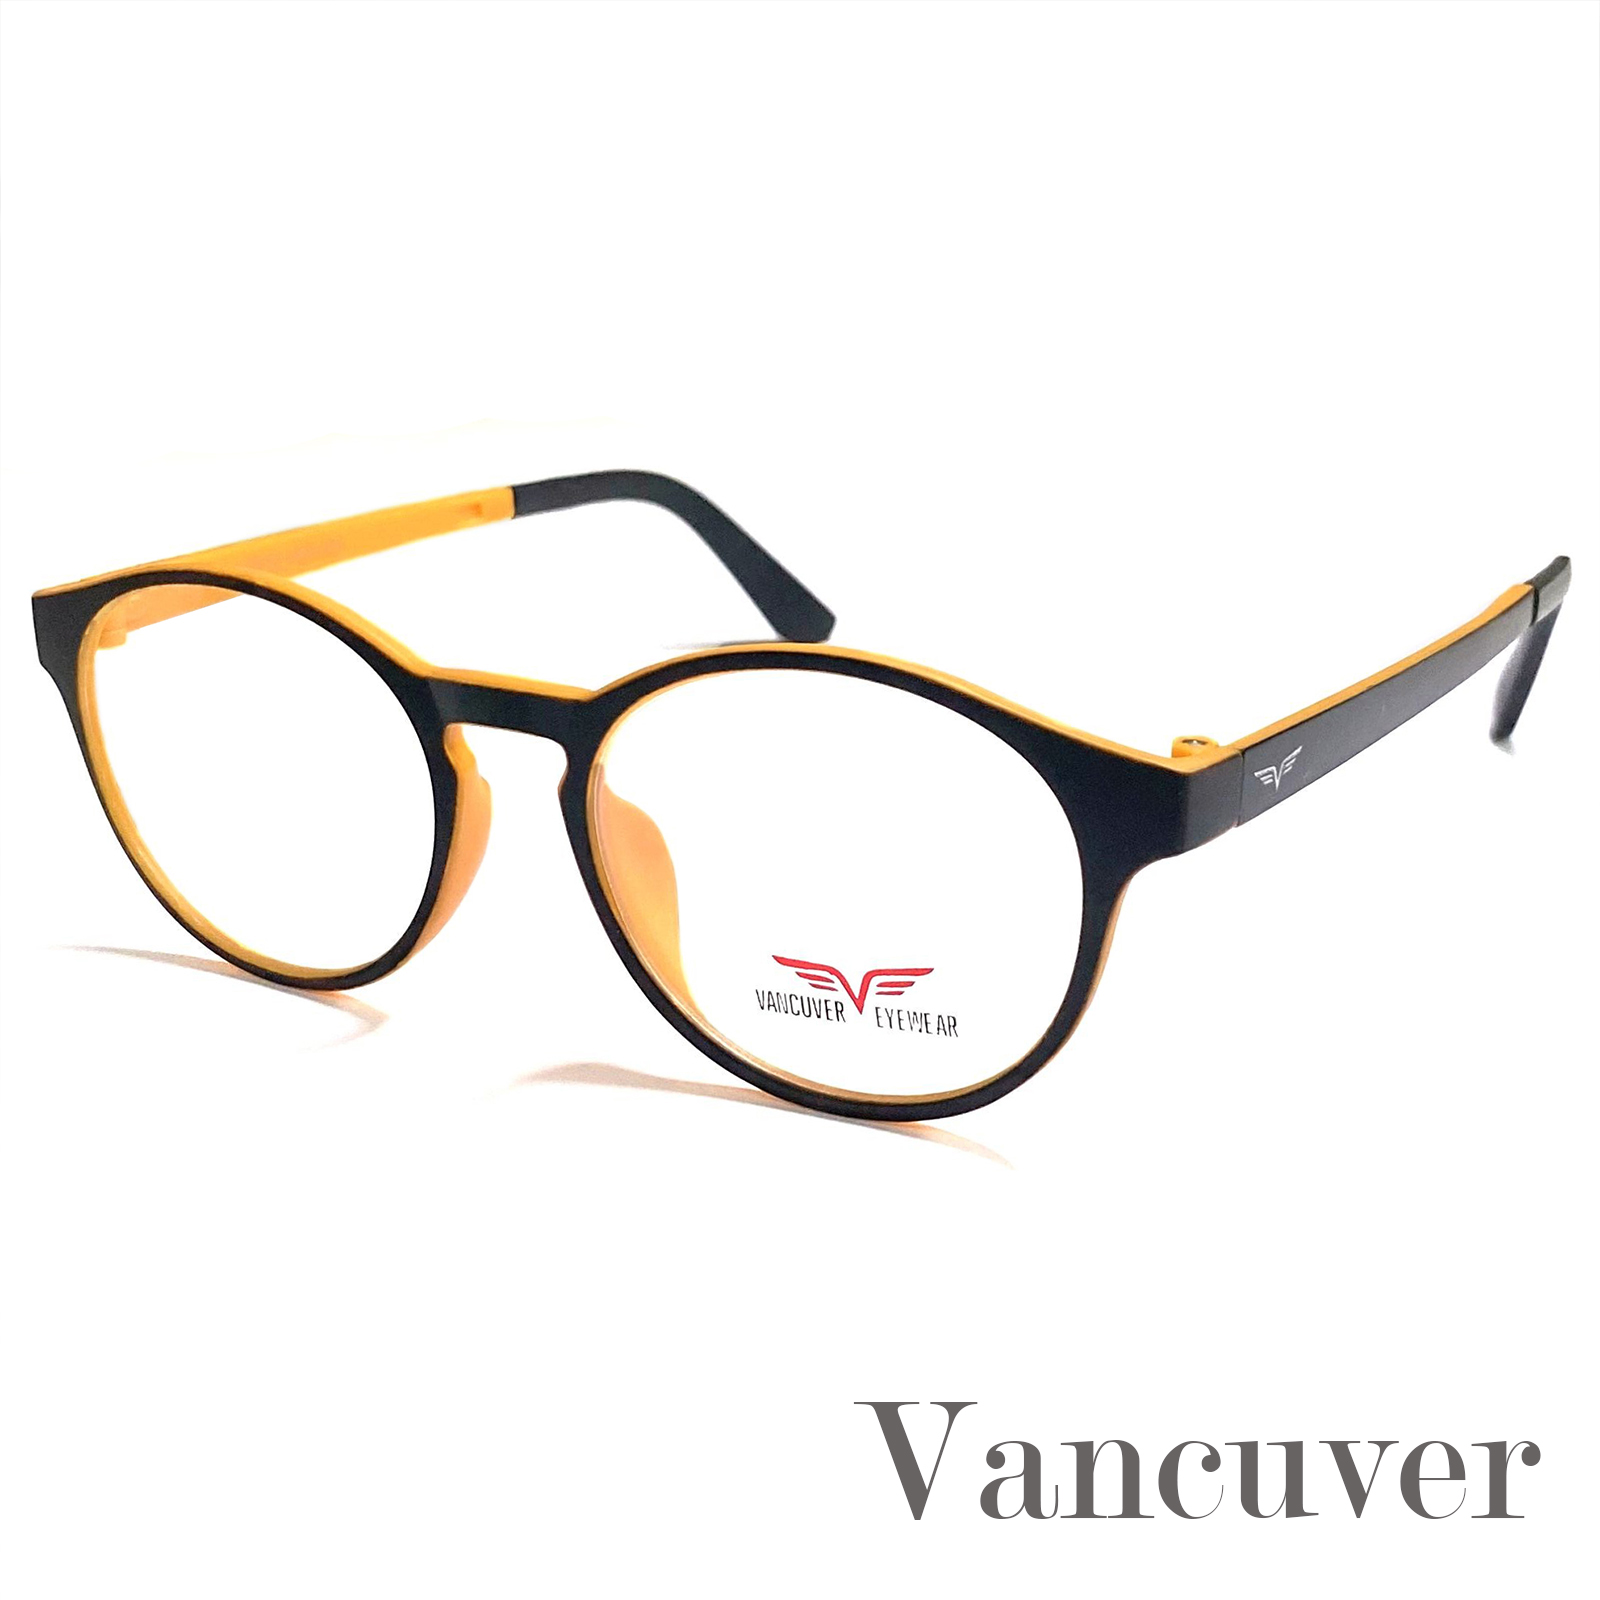 กรอบแว่นตา สำหรับตัดเลนส์ แว่นตา ชาย หญิง Fashion รุ่น Vancuver 1627 สีดำตัดส้ม กรอบเต็ม ทรงเหลี่ยม ขาข้อต่อ วัสดุ พลาสติก พีซี เกรด A รับตัดเลนส์ทุกชนิด